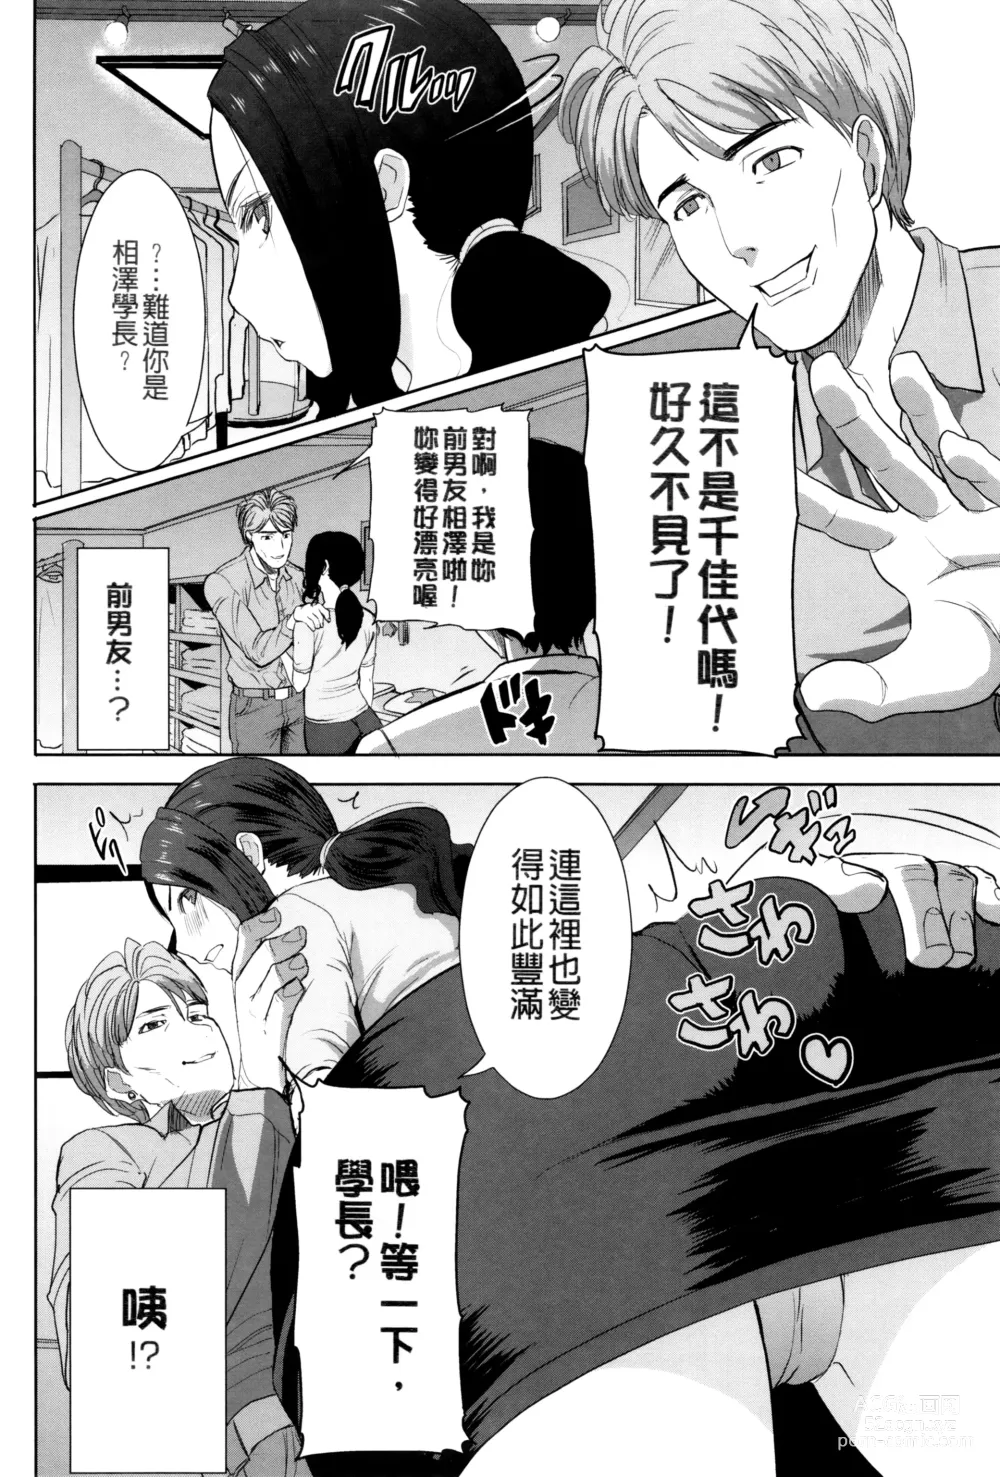 Page 5 of manga Kawaii Namaiki Tsuma Chikayo...to Motokare 1+2